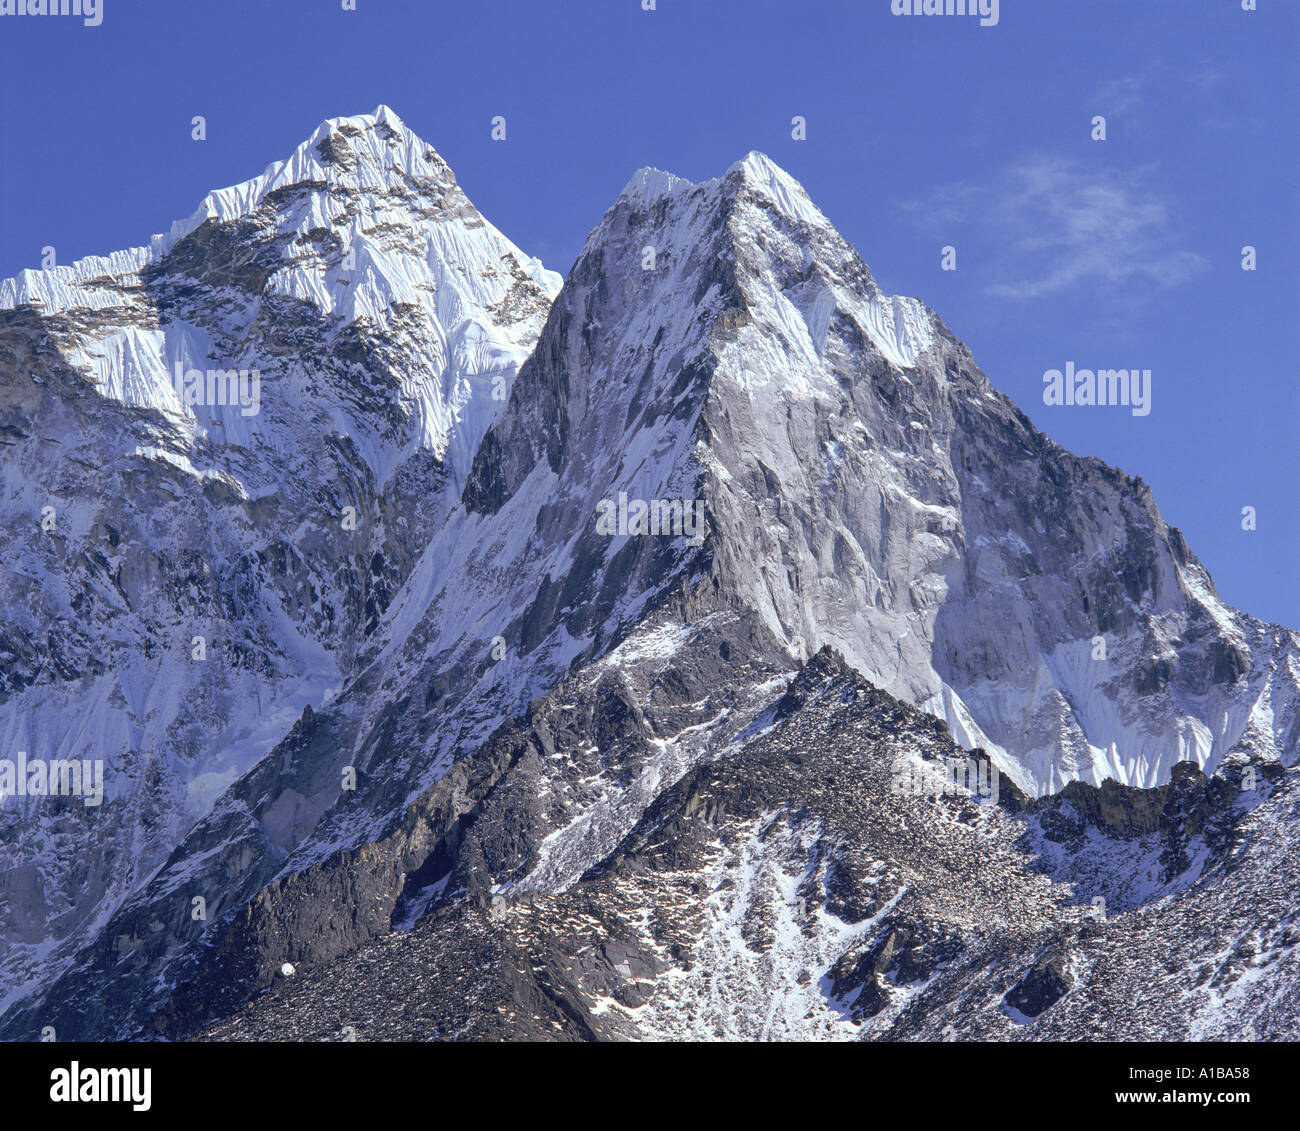 Die schneebedeckten Gipfel der Ama Dablam Blick nach Süden vom Heck des Khumbul-Gletschers im Himalaya Nepal Asien T Laird Stockfoto